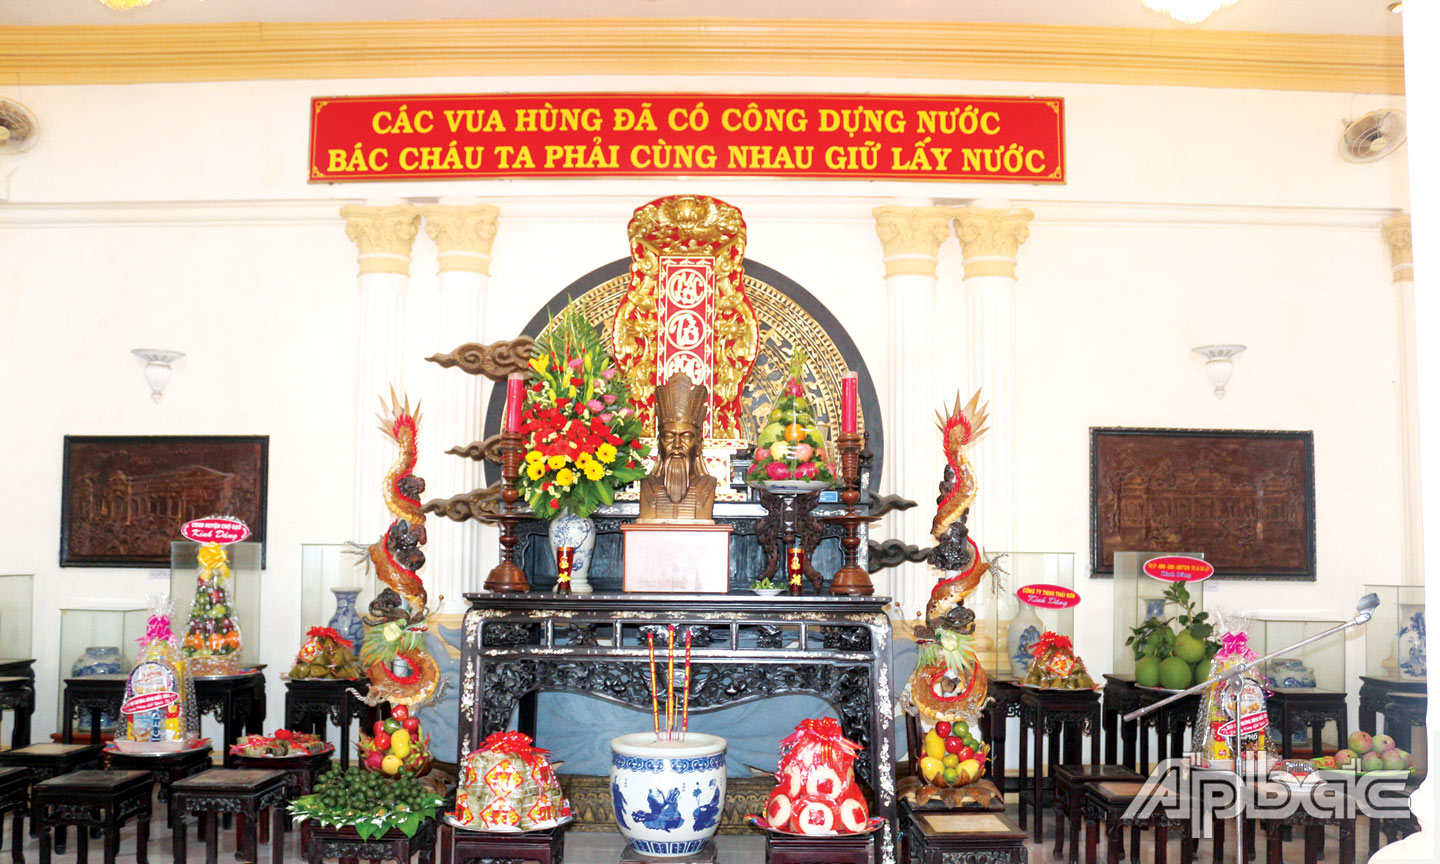 Hằng năm, tại Bảo tàng Tiền Giang đều tổ chức trang trọng Lễ Giỗ Tổ Hùng Vương, đáp ứng nhu cầu đến dâng hương, tưởng niệm các Vua Hùng của nhân dân tỉnh nhà.